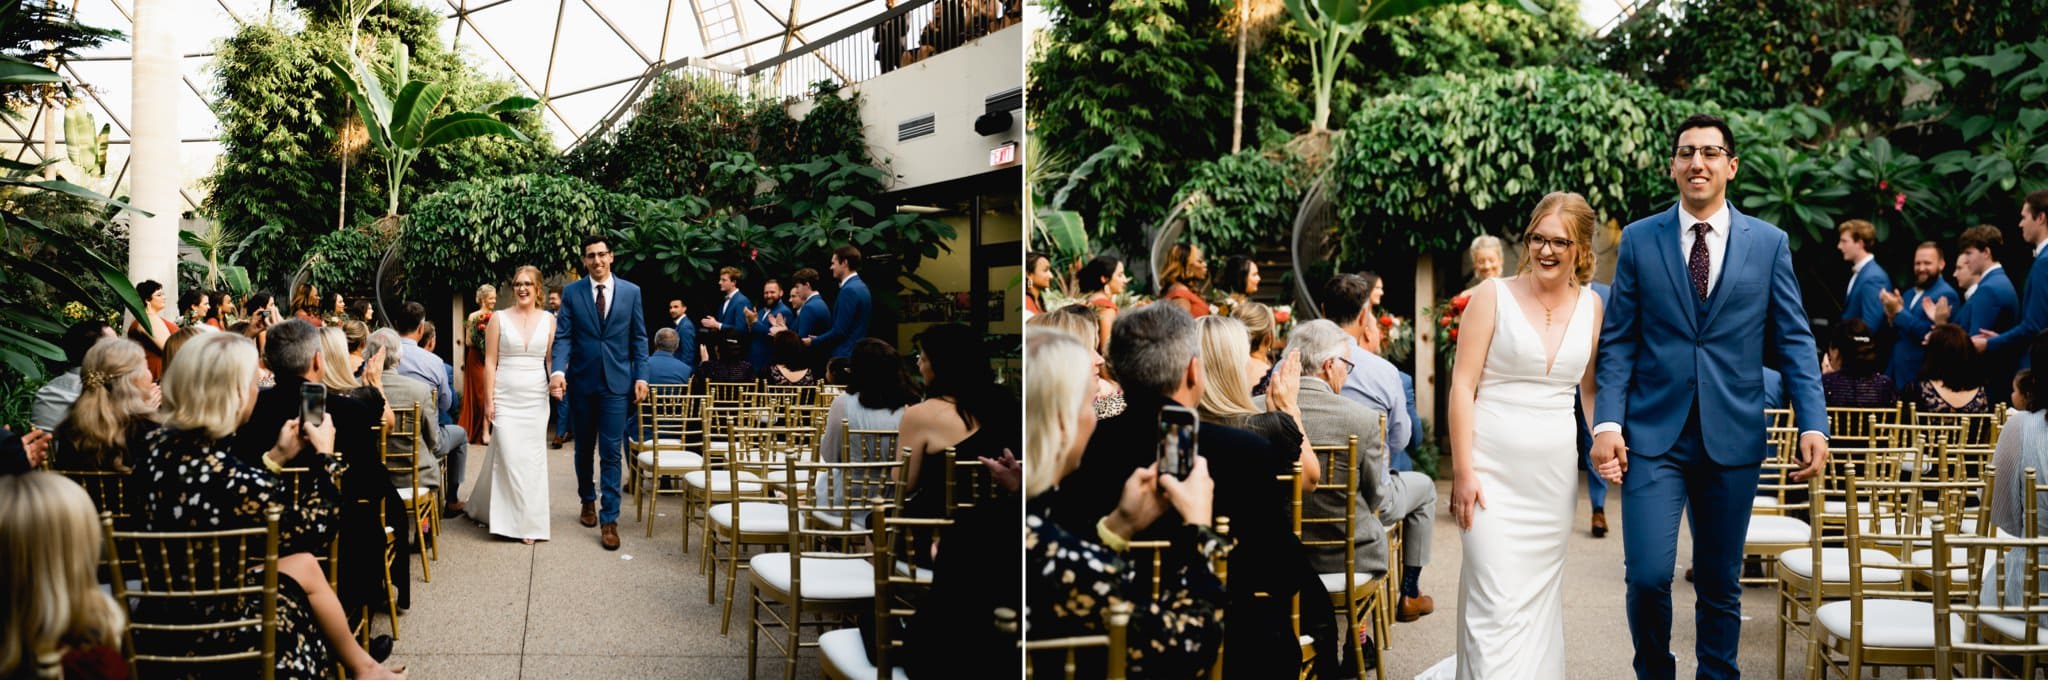 des moines botanical garden wedding photos